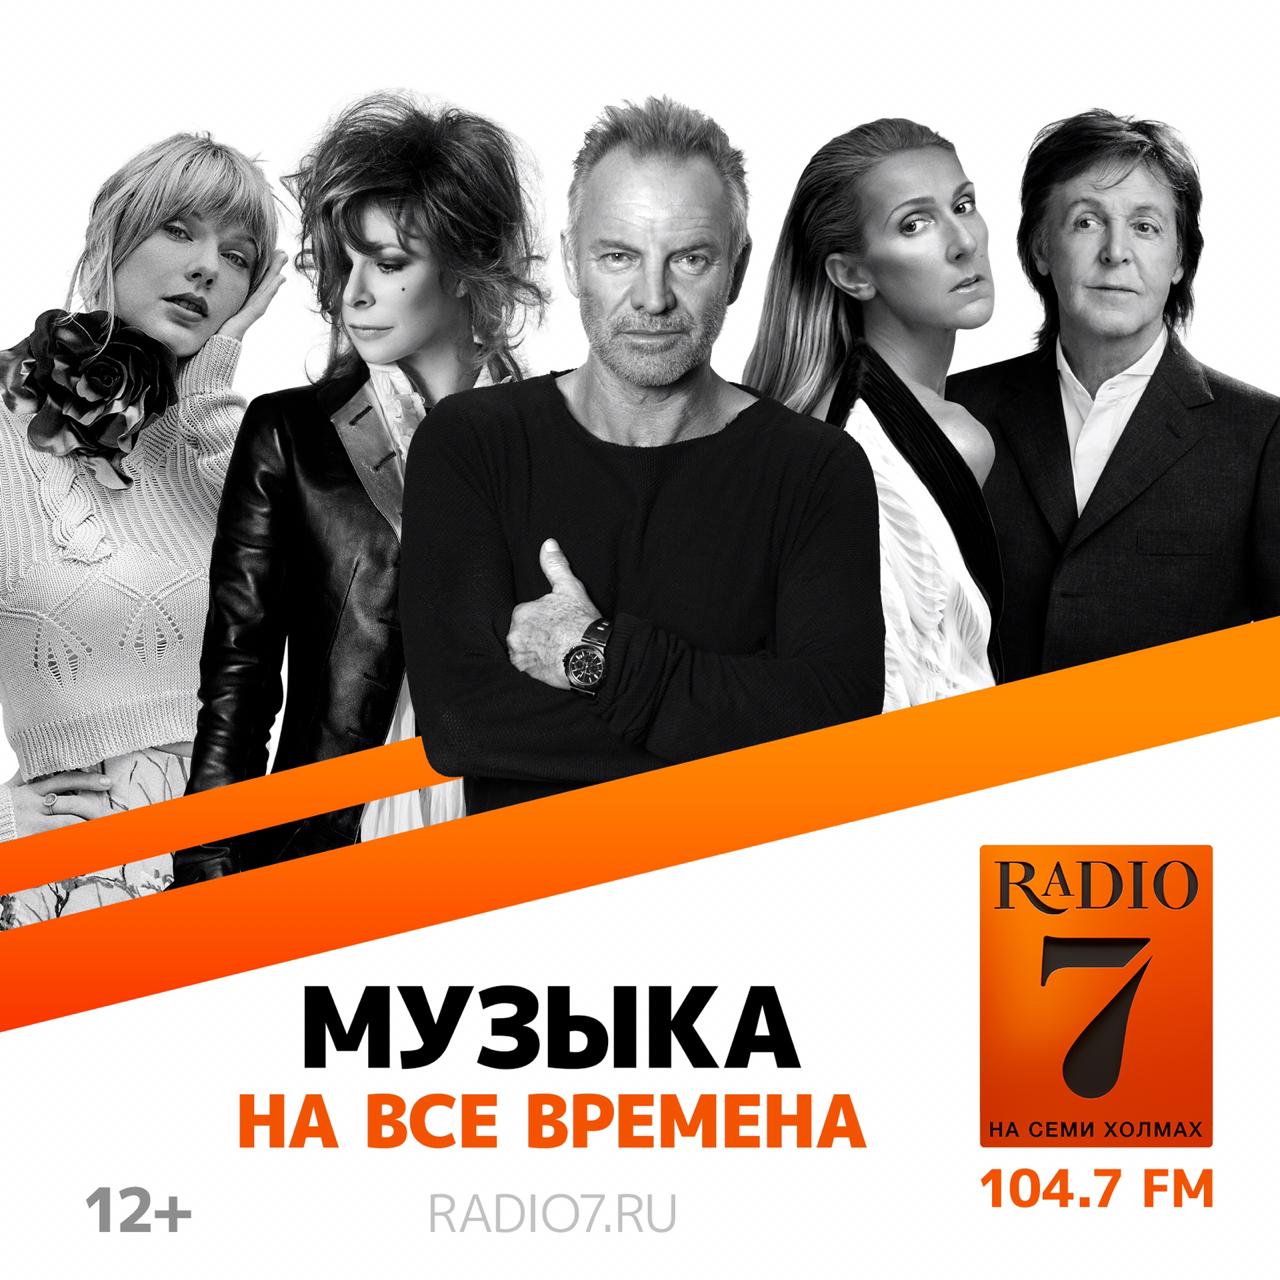 Радио семь нижний. Радио на семи холмах. Радио 7 на 7. Радио 7 на семи холмах Москва. Радио 7 реклама.